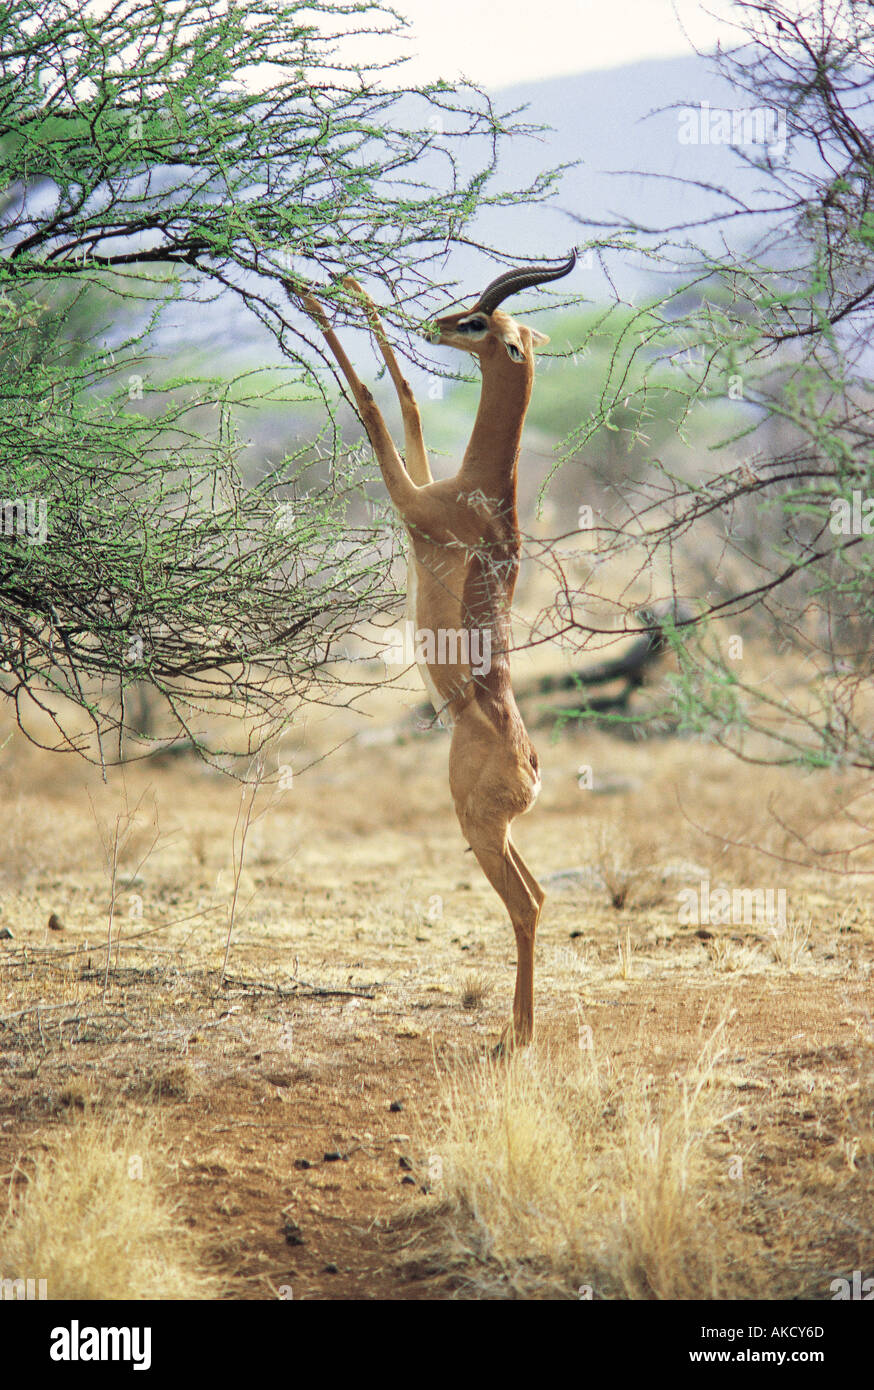 Gerenuk mâle naviguant sur un acacia bush par debout sur ses pattes de derrière Banque D'Images